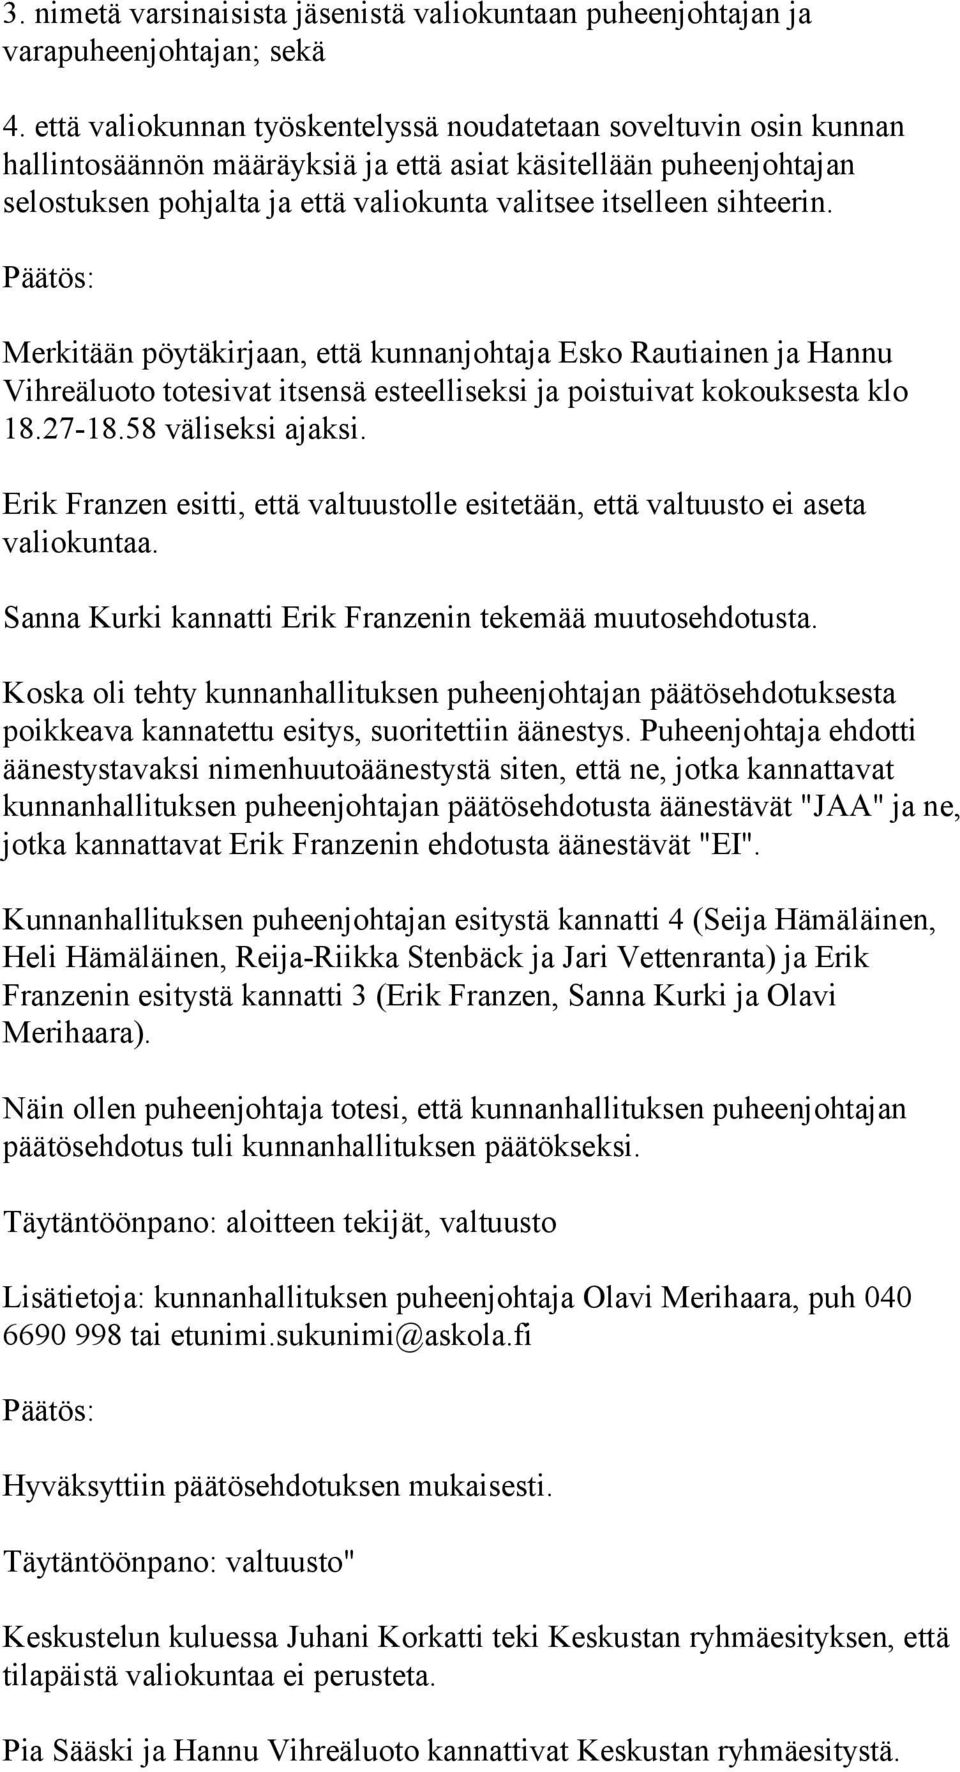 sihteerin. Päätös: Merkitään pöytäkirjaan, että kunnanjohtaja Esko Rautiainen ja Hannu Vihreäluoto totesivat itsensä esteelliseksi ja poistuivat kokouksesta klo 18.27-18.58 väliseksi ajaksi.